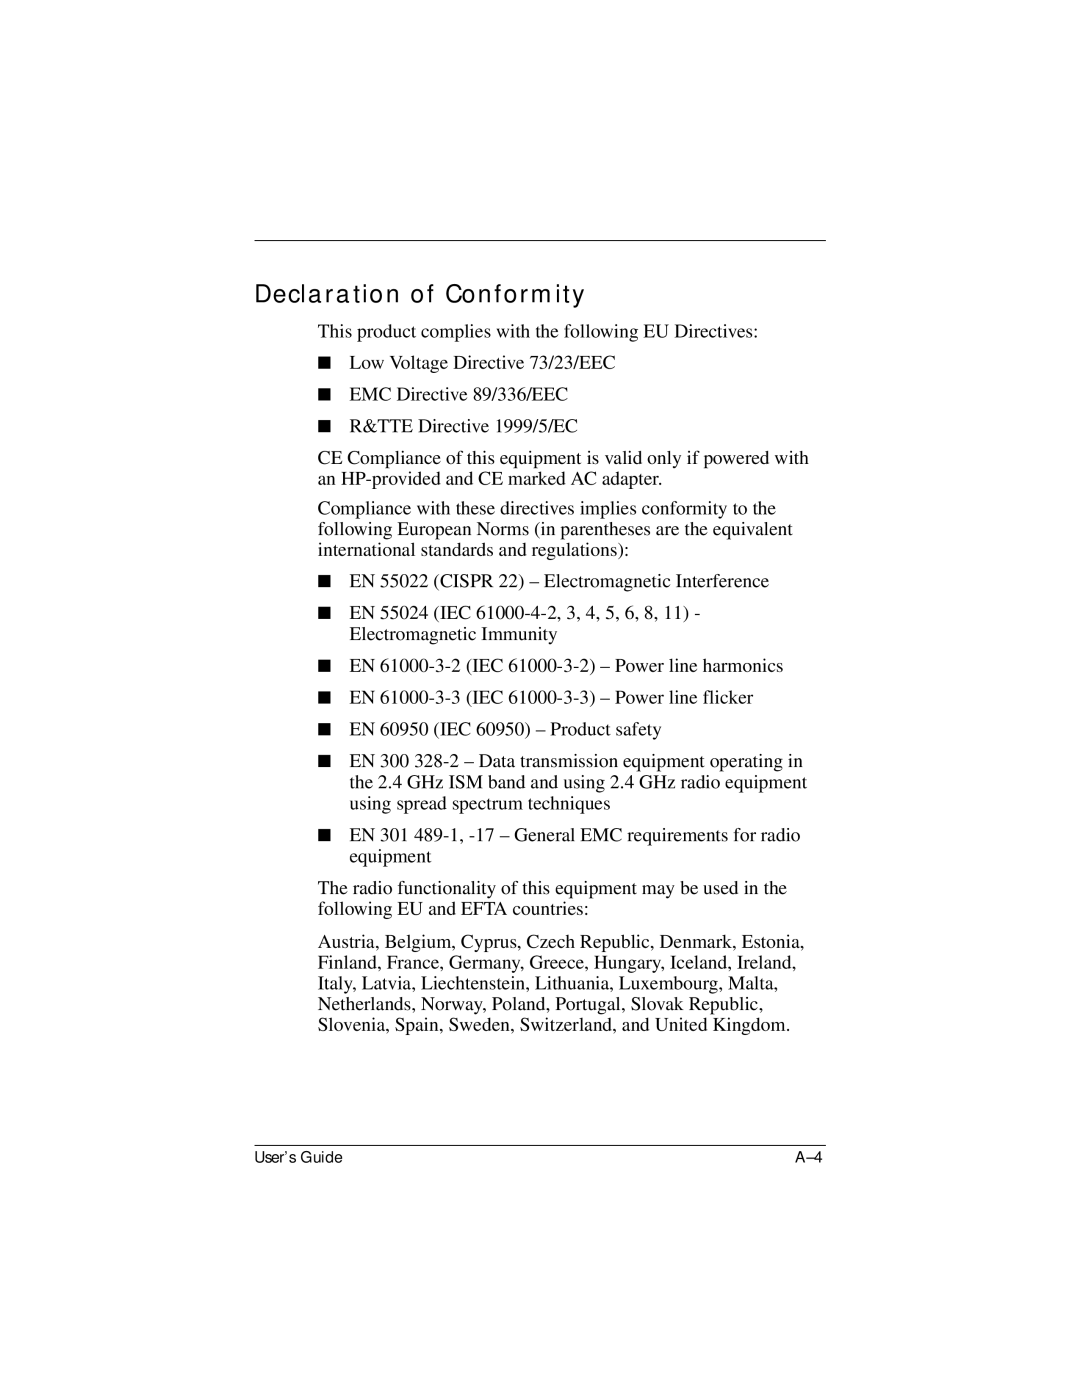 HP hx4700 manual Declaration of Conformity 